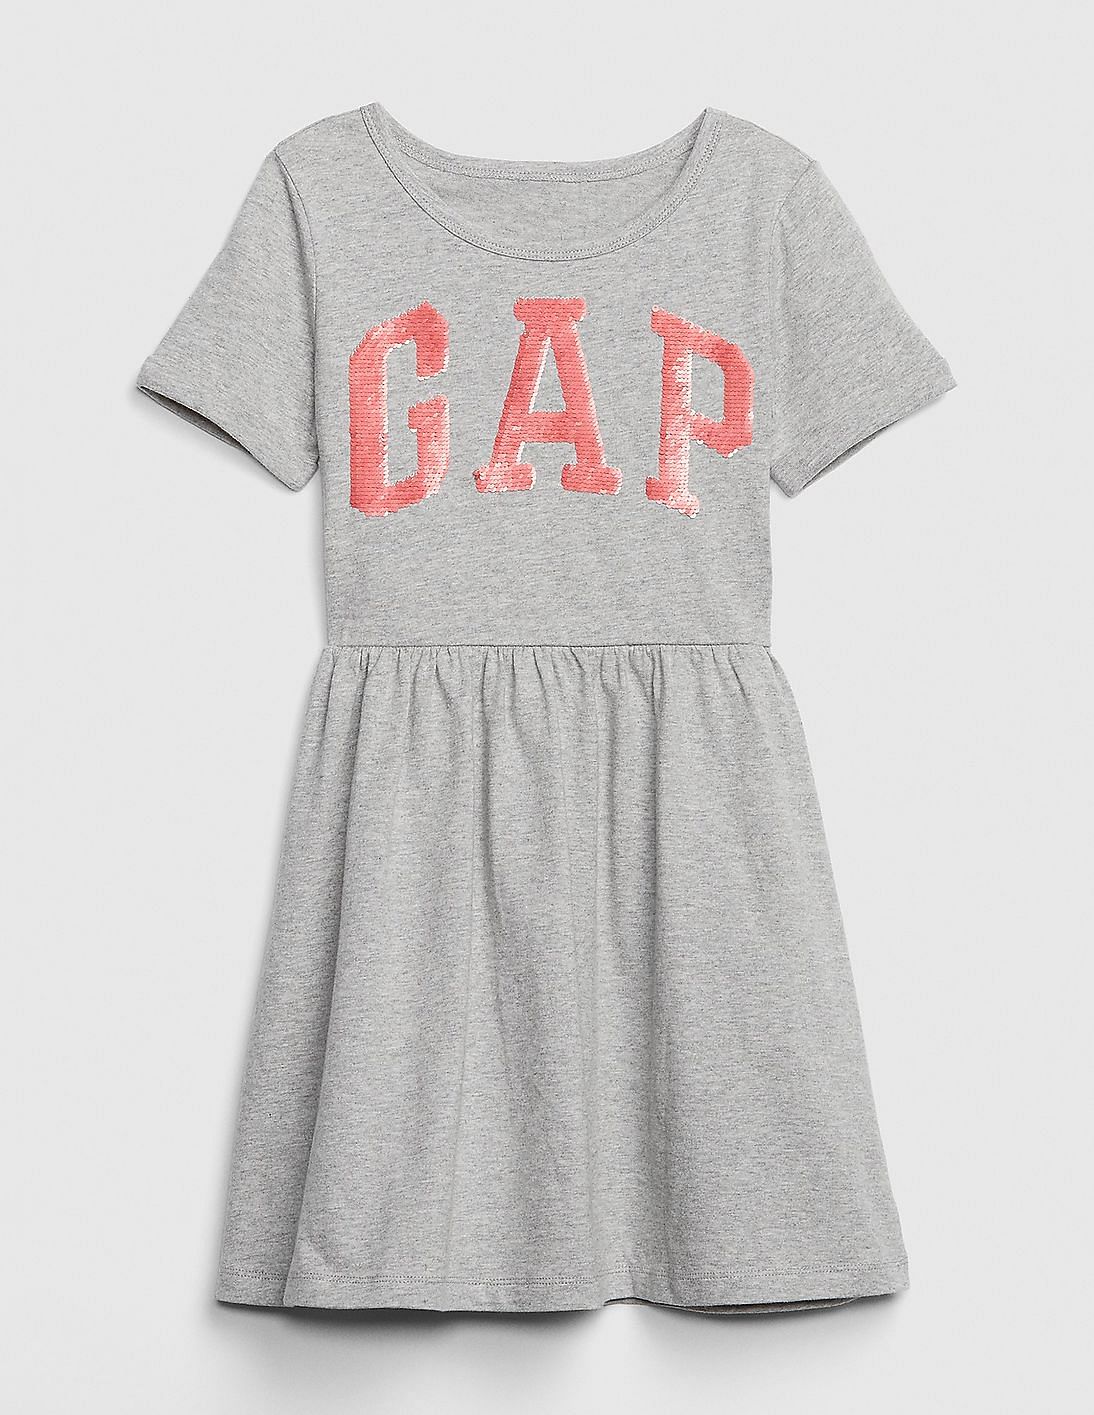 gap girls sequin dress